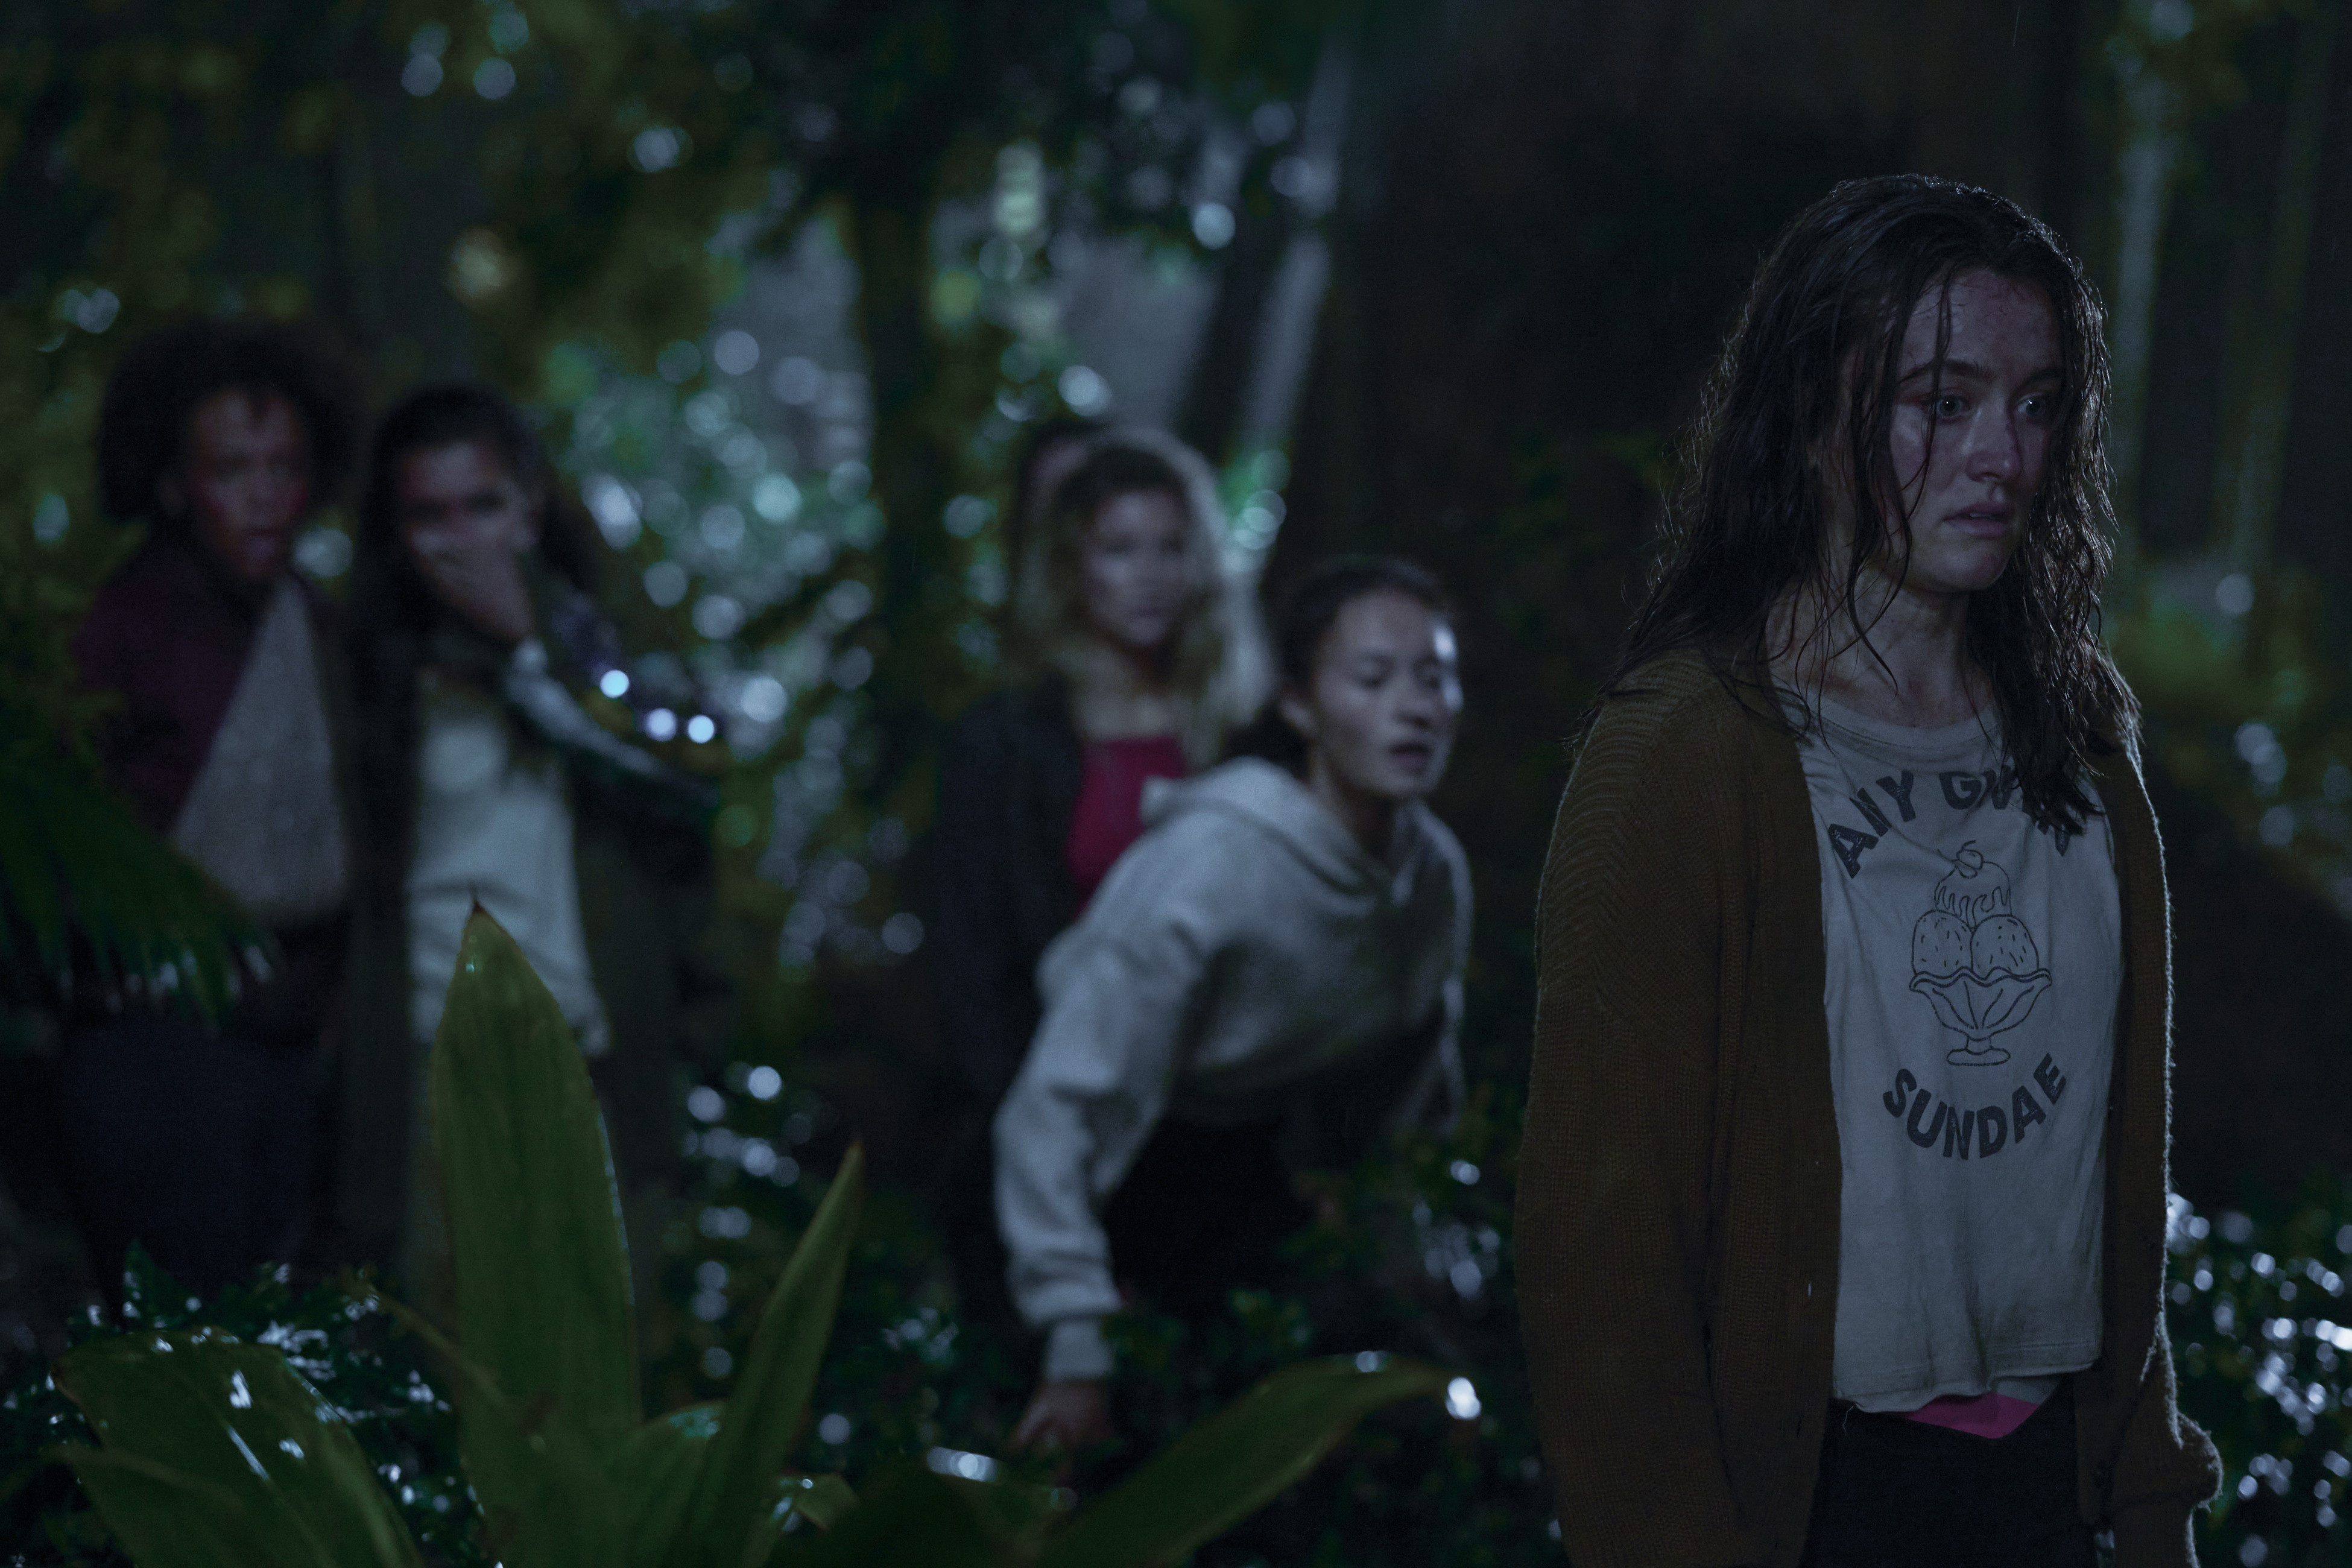 Mia Healy (Shelby Goodkind), Erana James (Tony Shalifo), Sarah Pidgeon (Leah Rilke) in the woods at night in The Wilds Season 2